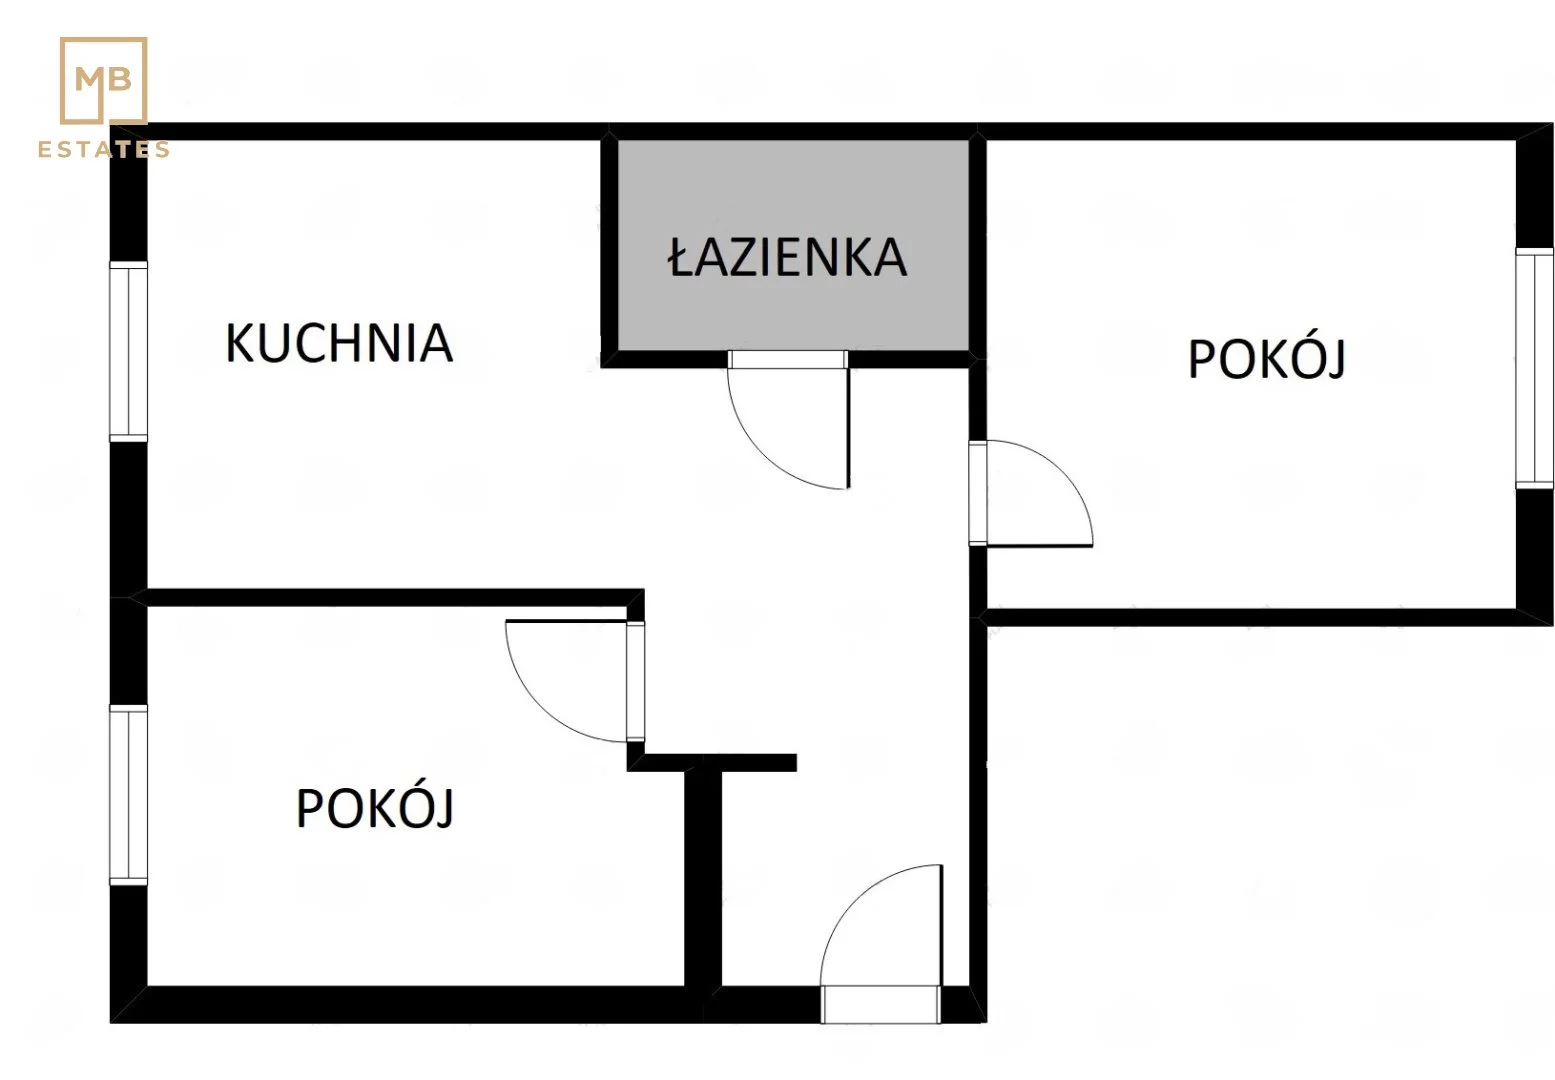 Apartament 48,30 m², parter, oferta nr , MBE-MS-5022, Kraków, Mistrzejowice, Nowa Huta, os. Zielone